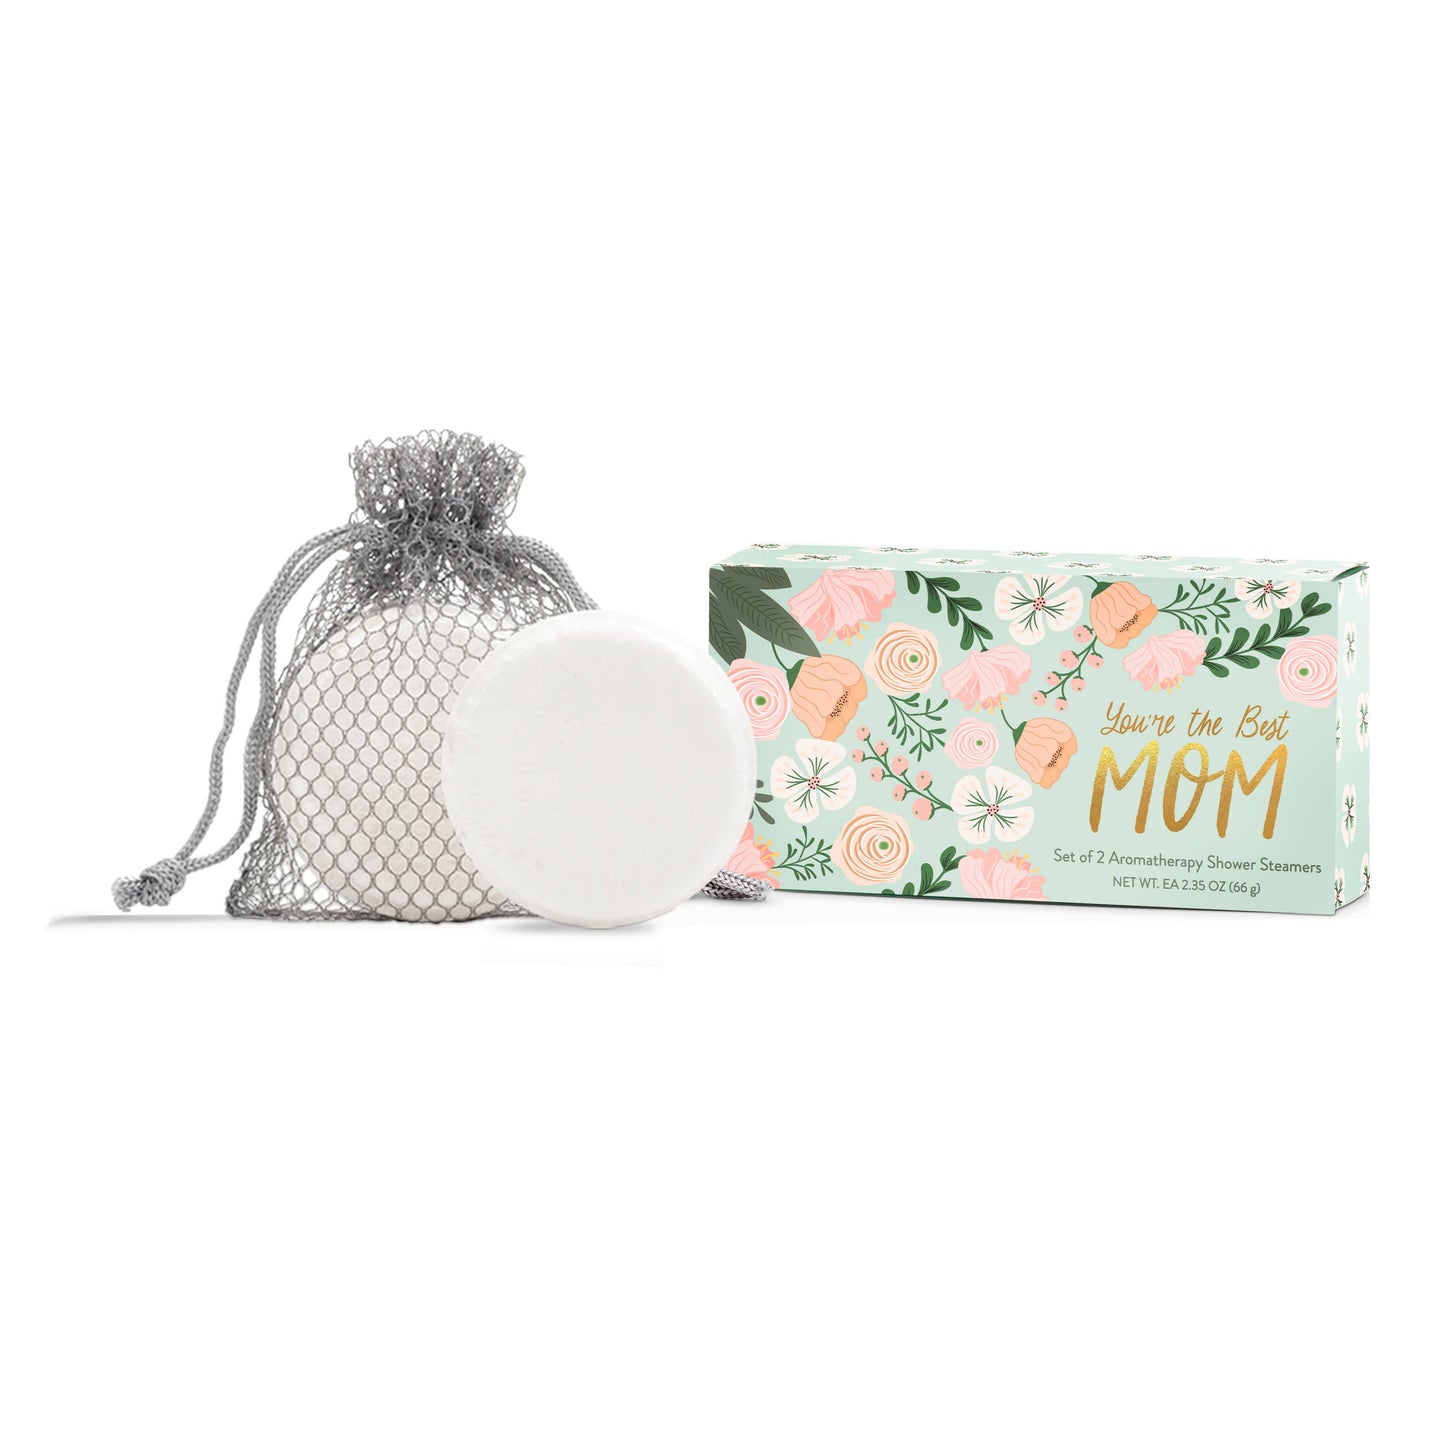 Cait + Co - Best Mom Shower Steamer Gift Set